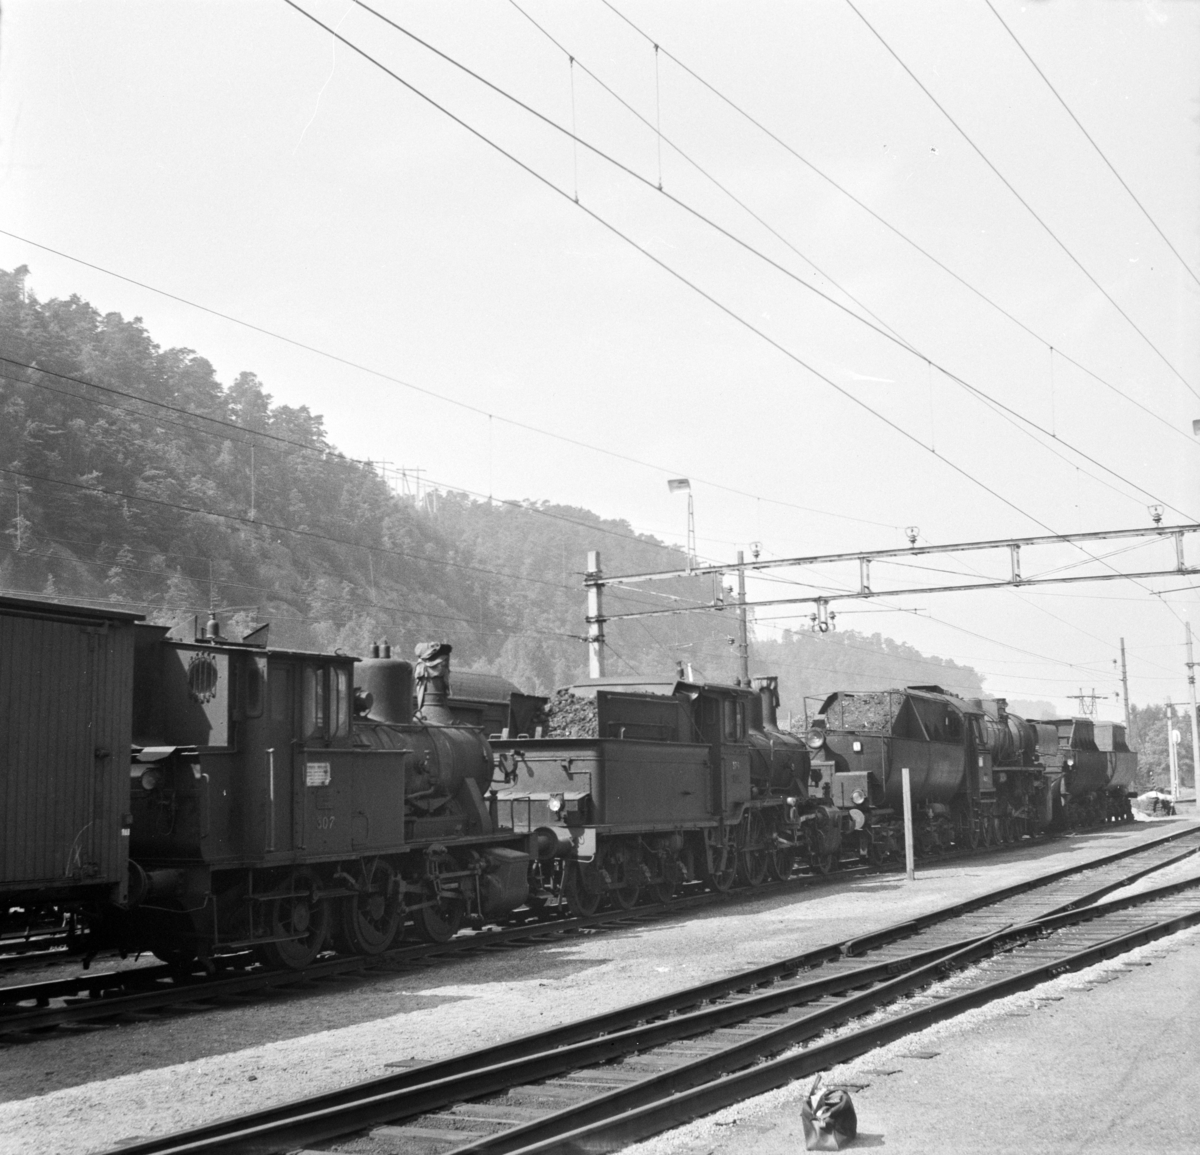 Hensatte damplokomotiver på Krossen ved Kristiansand. Nærmest type 25a nr. 307 (hensatt i 1965, utrangert i 1969), deretter 21c 376 (utrangert i 1971) og bakerst 63a 4836 (utrangert i 1970). Lok 376 var det siste damplok som var i drift ved NSB.